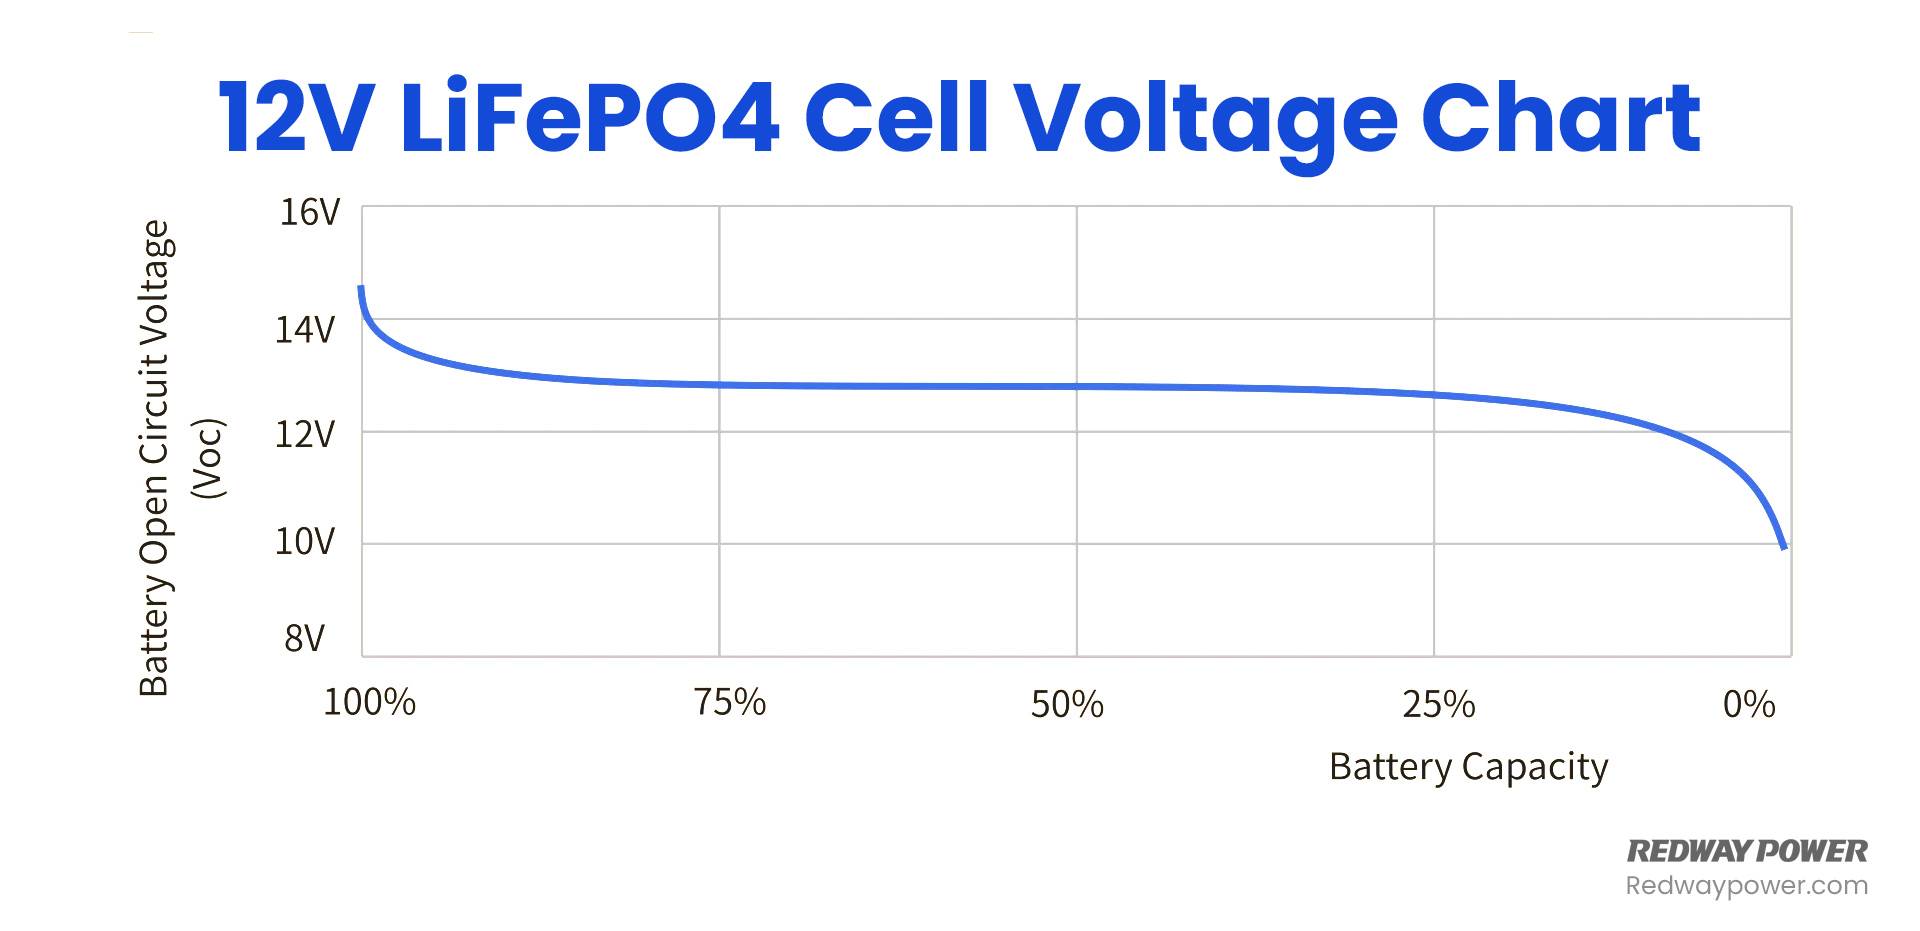 LiFePO4 Voltage Chart (3.2V, 12V, 24V 48V) Comparison, 12V LiFePO4 Cell Voltage Chart